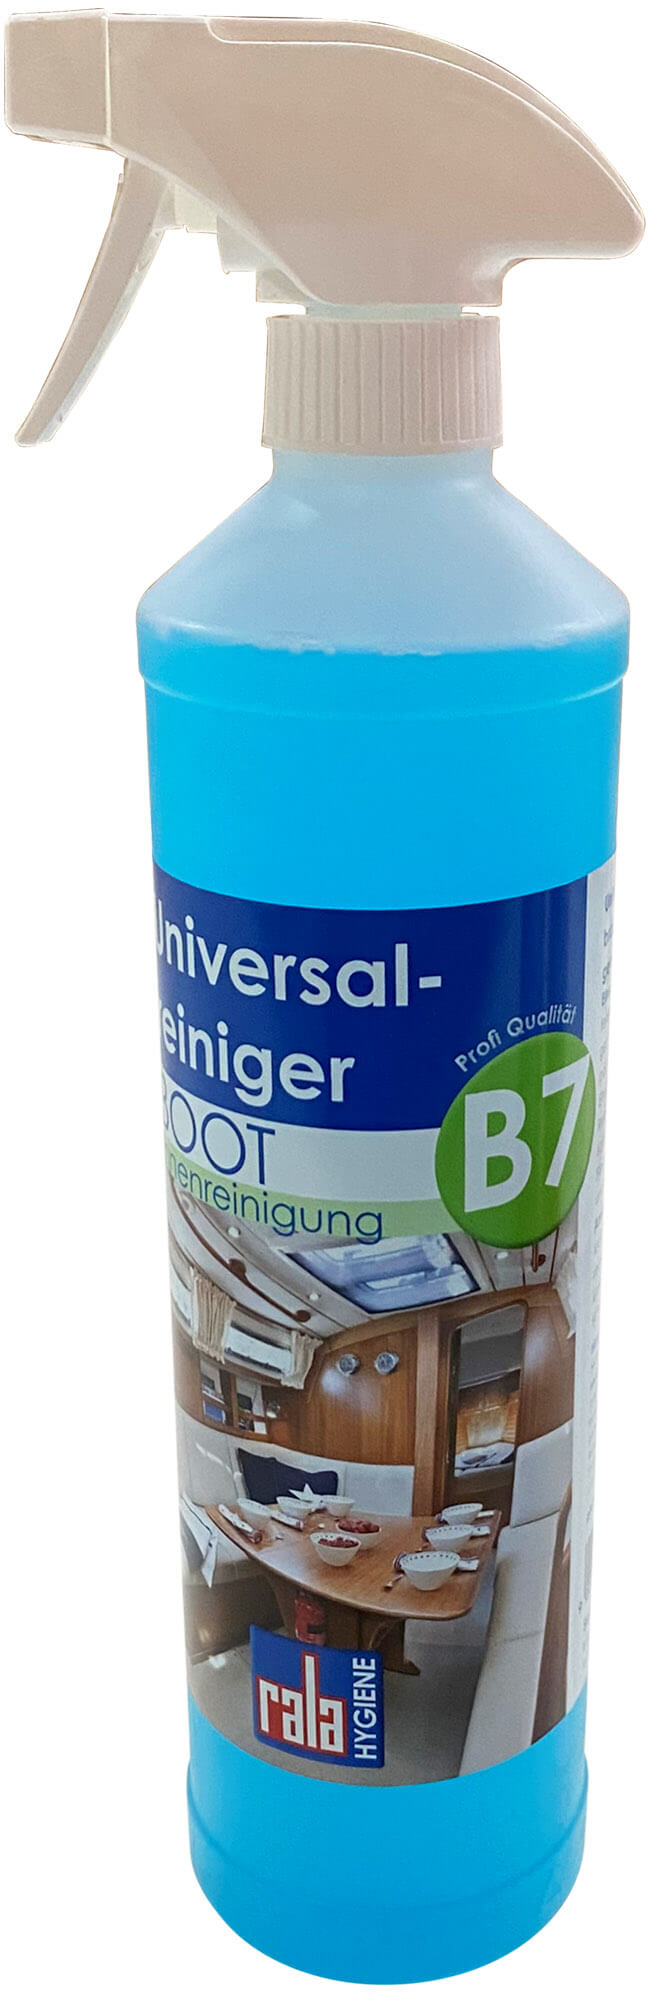 B7 Universalreiniger